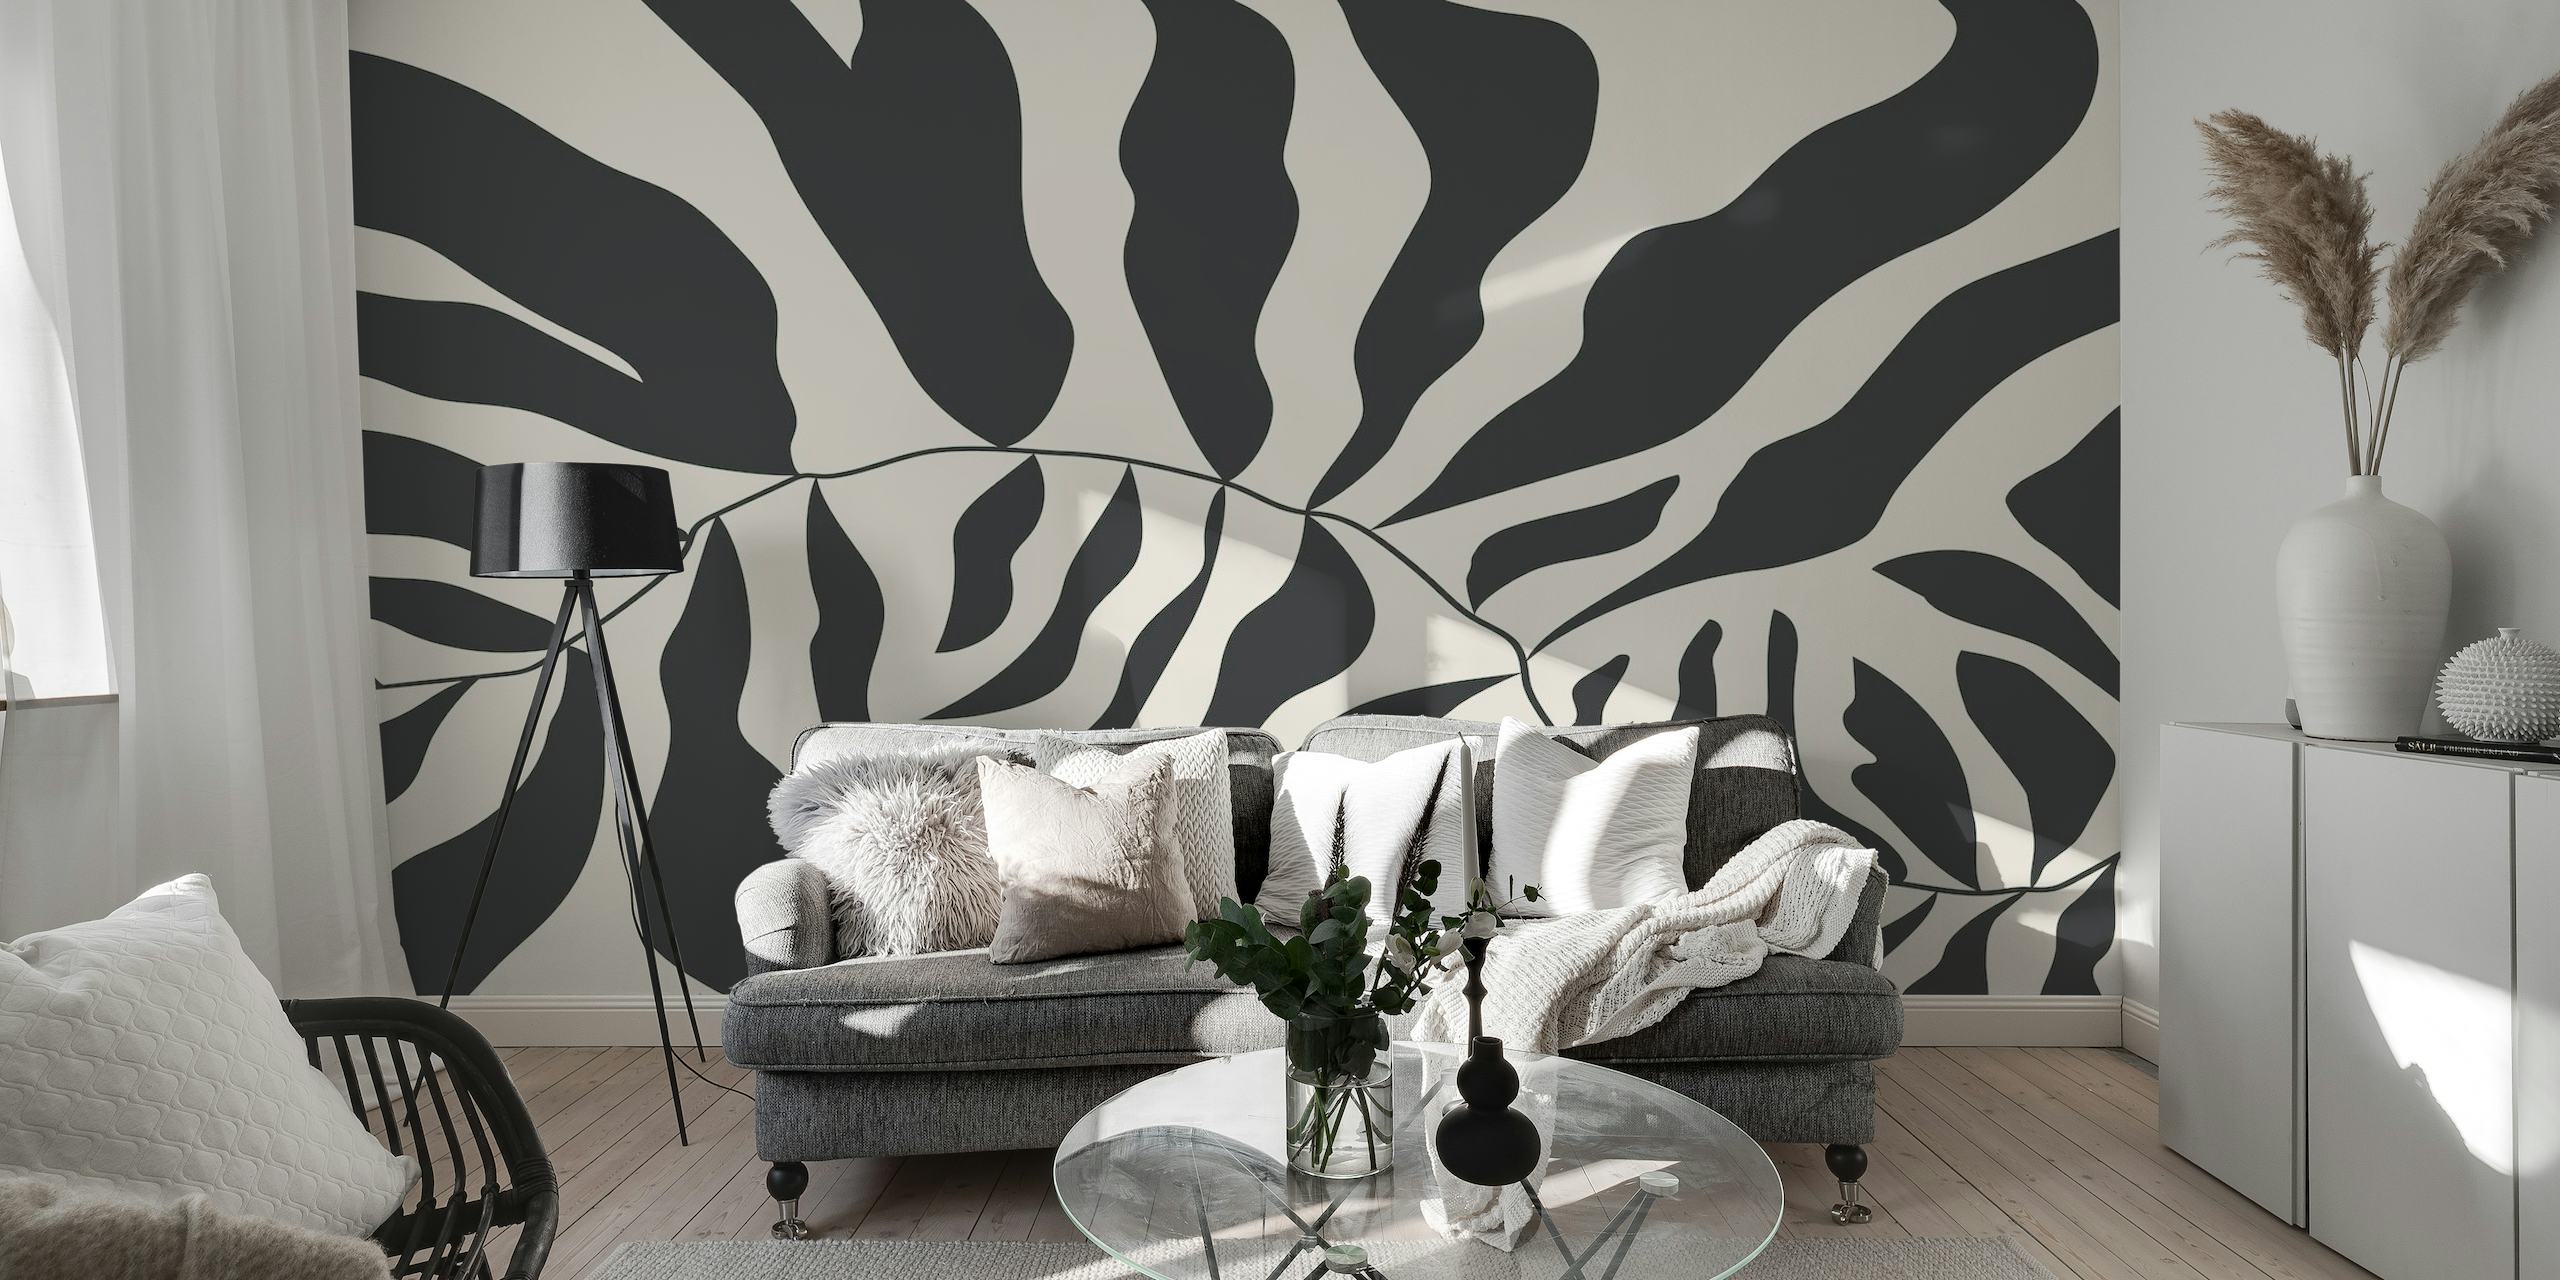 Mural abstracto en blanco y negro estilo Matisse que representa formas orgánicas